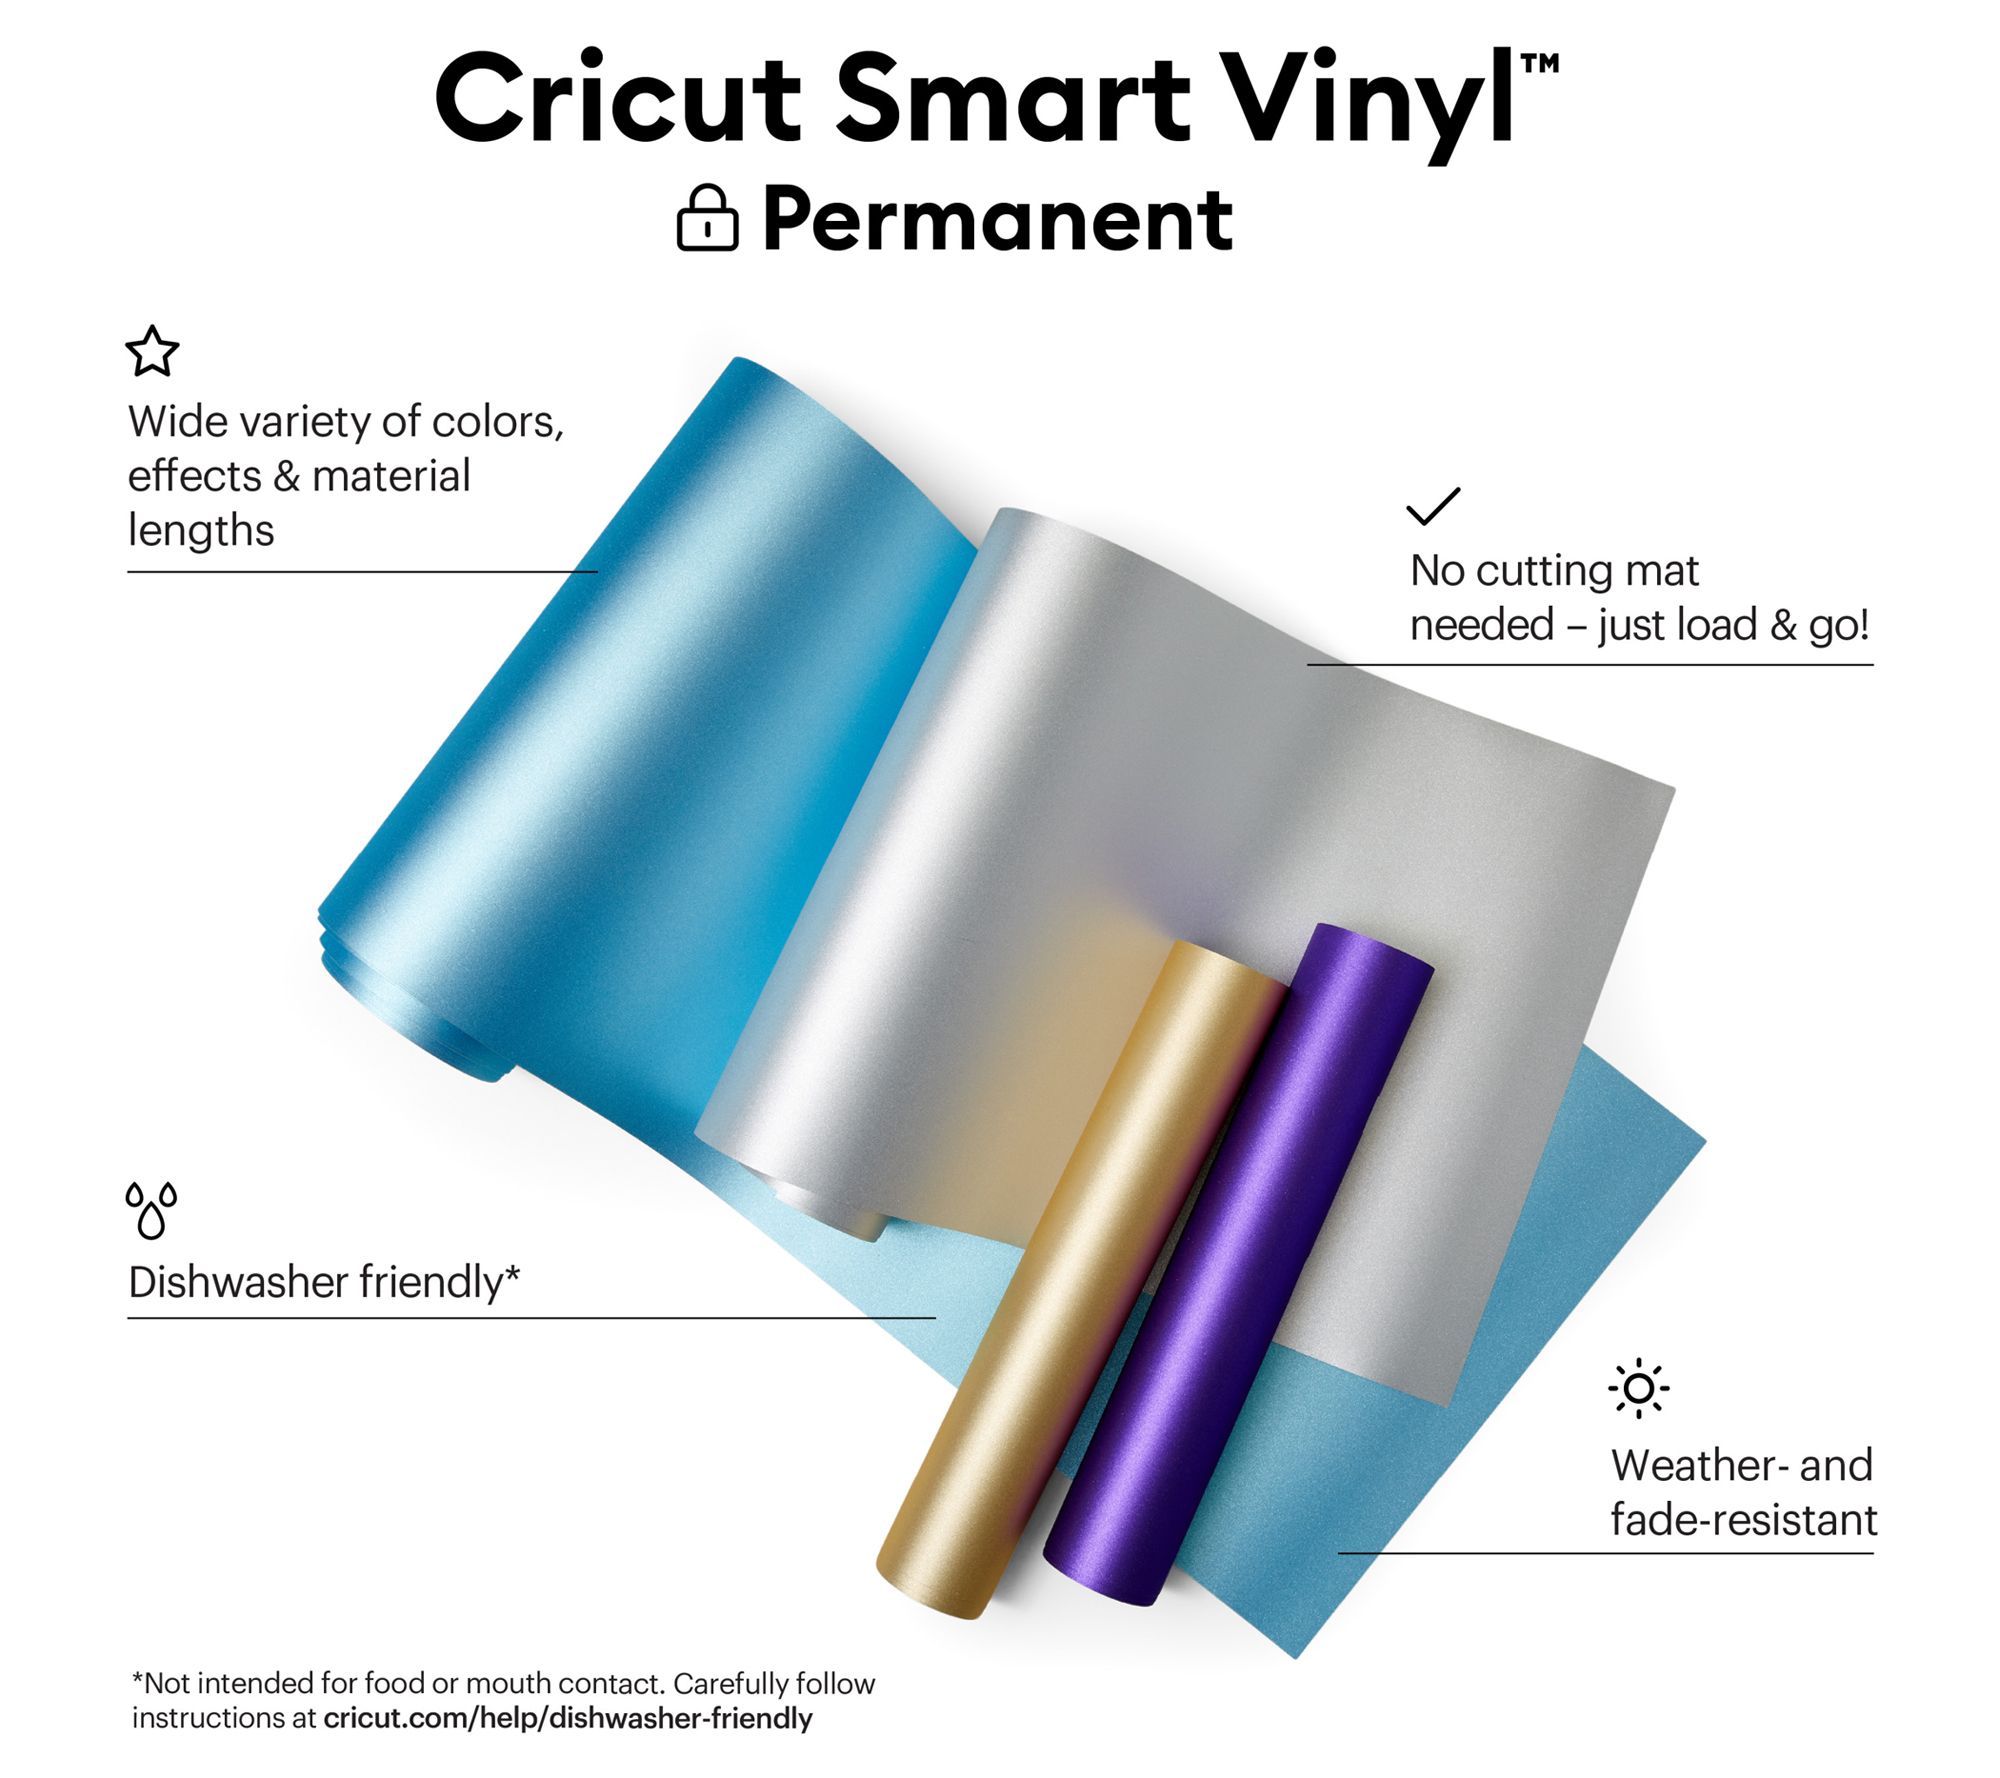 How to Use Cricut Smart Vinyl Materials - Cricut Smart Vinyl Tutorial